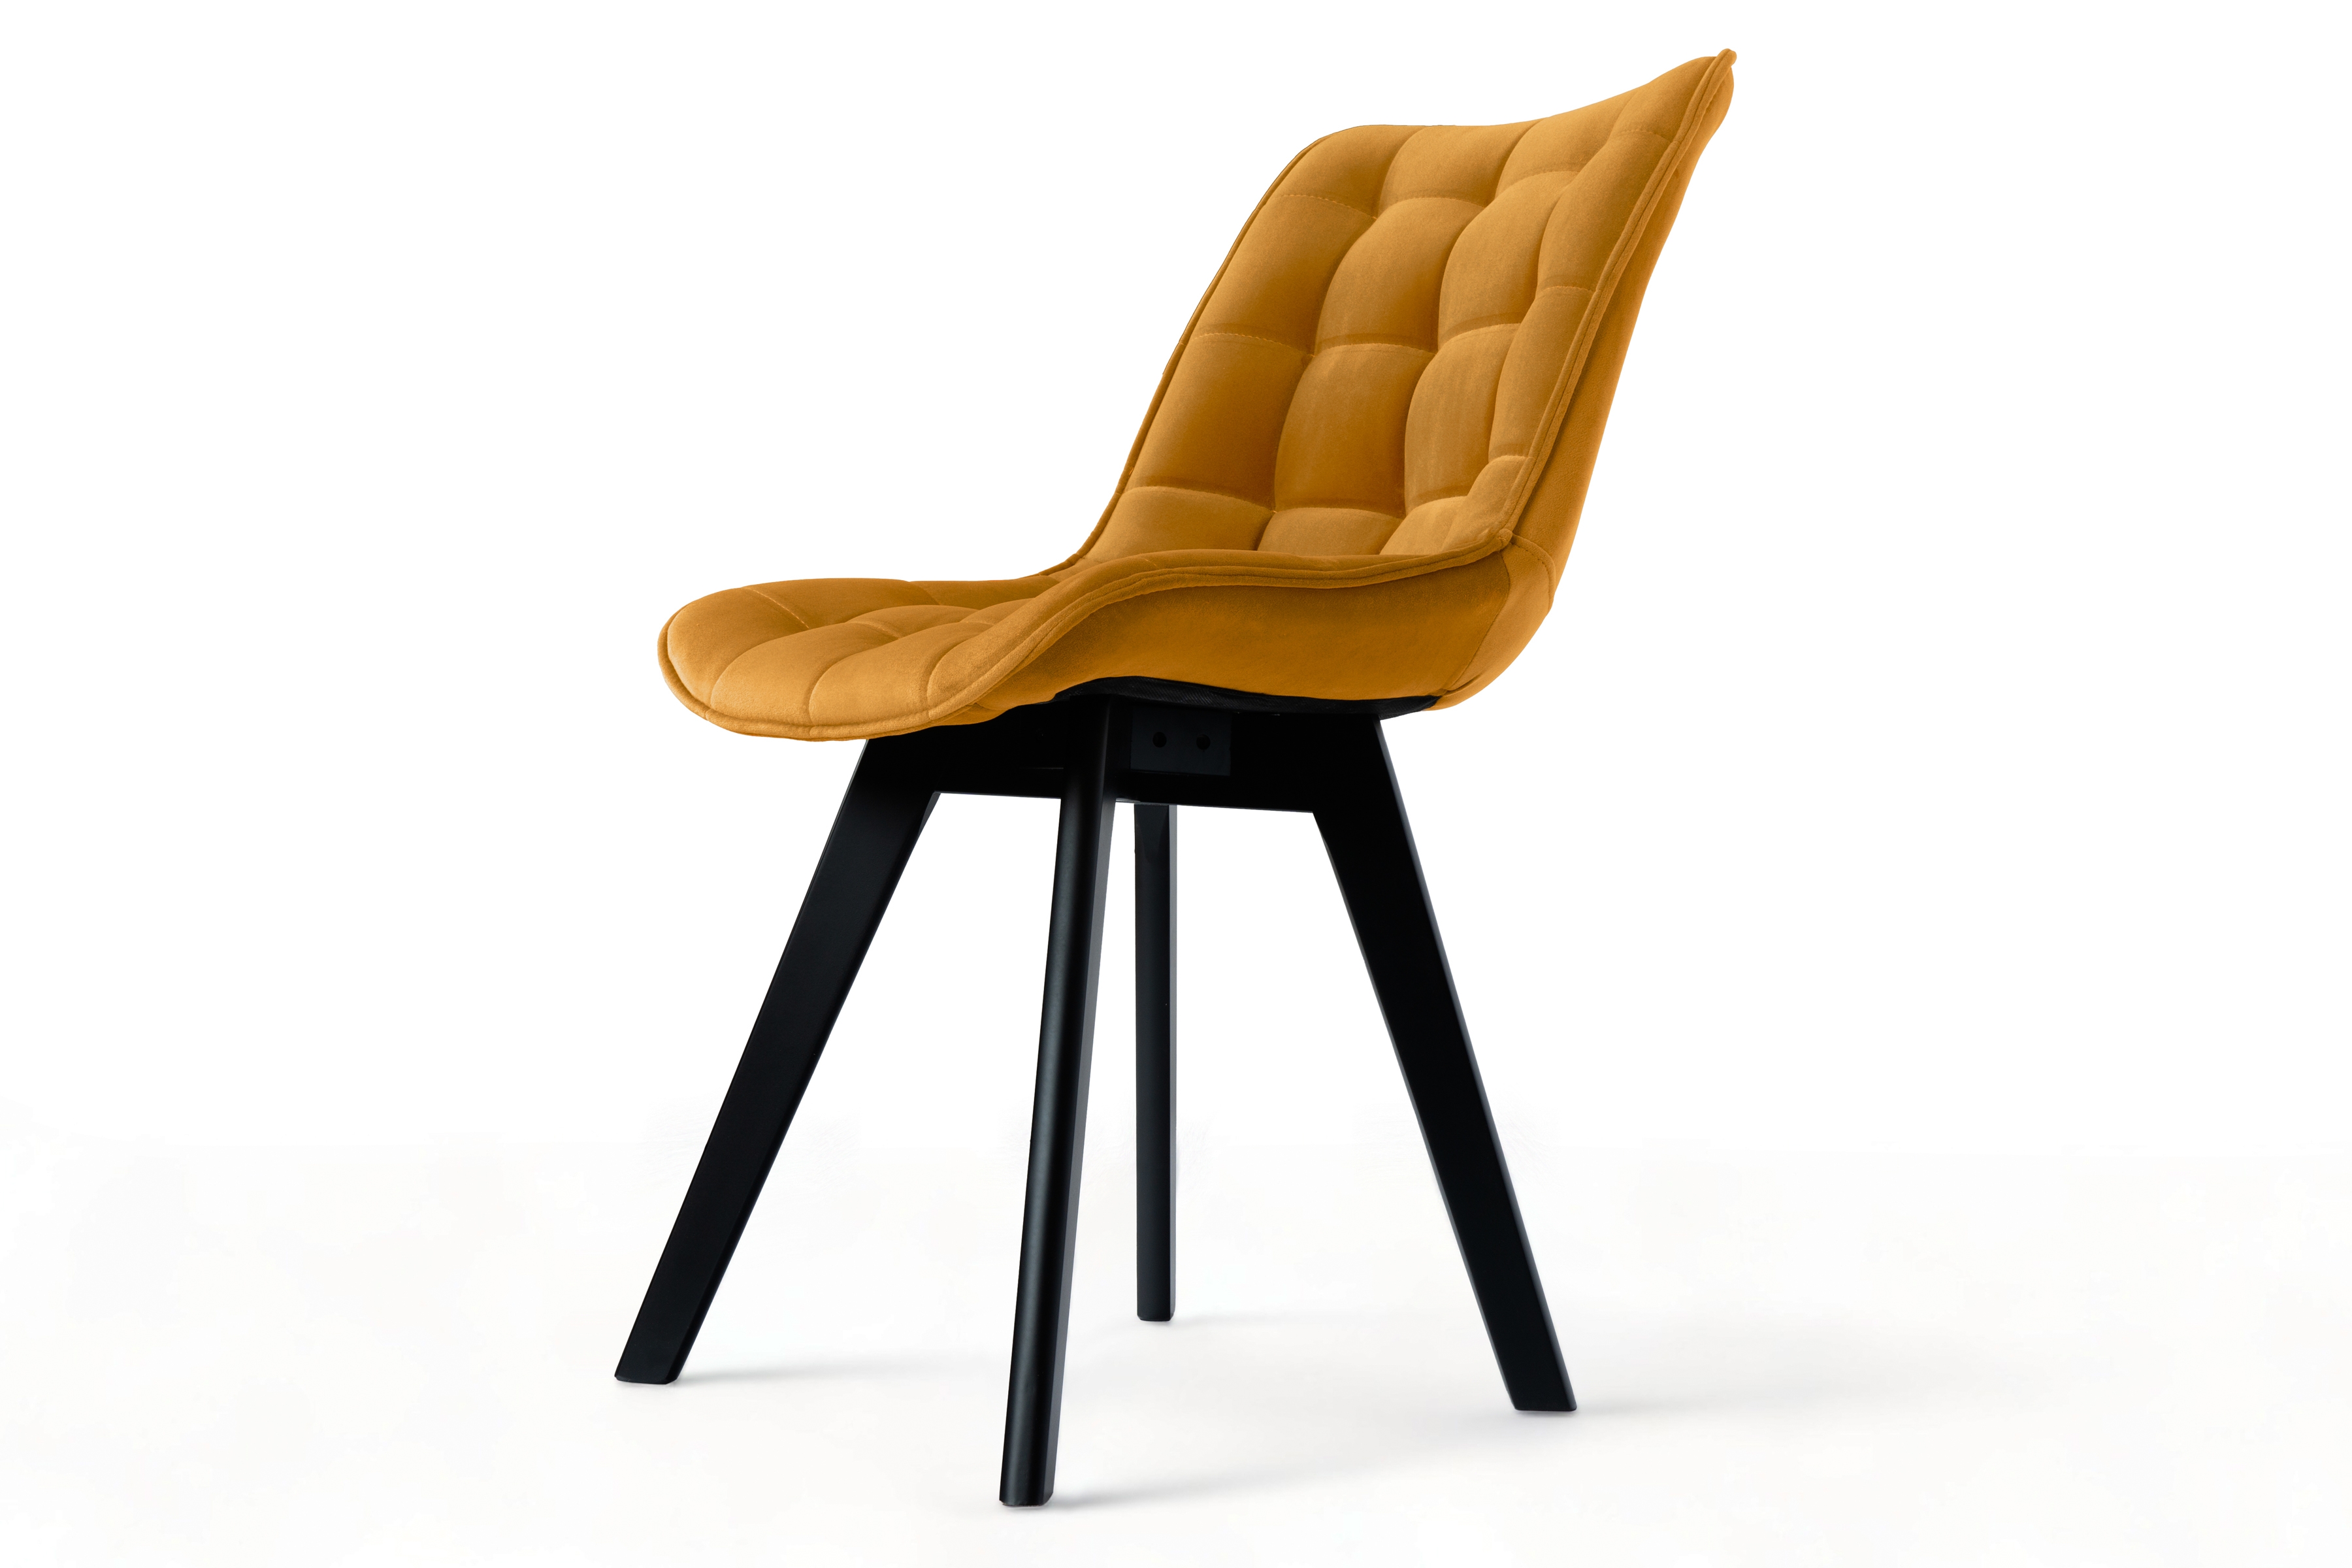 židle čalouněné Prato na drewnianych nogach 